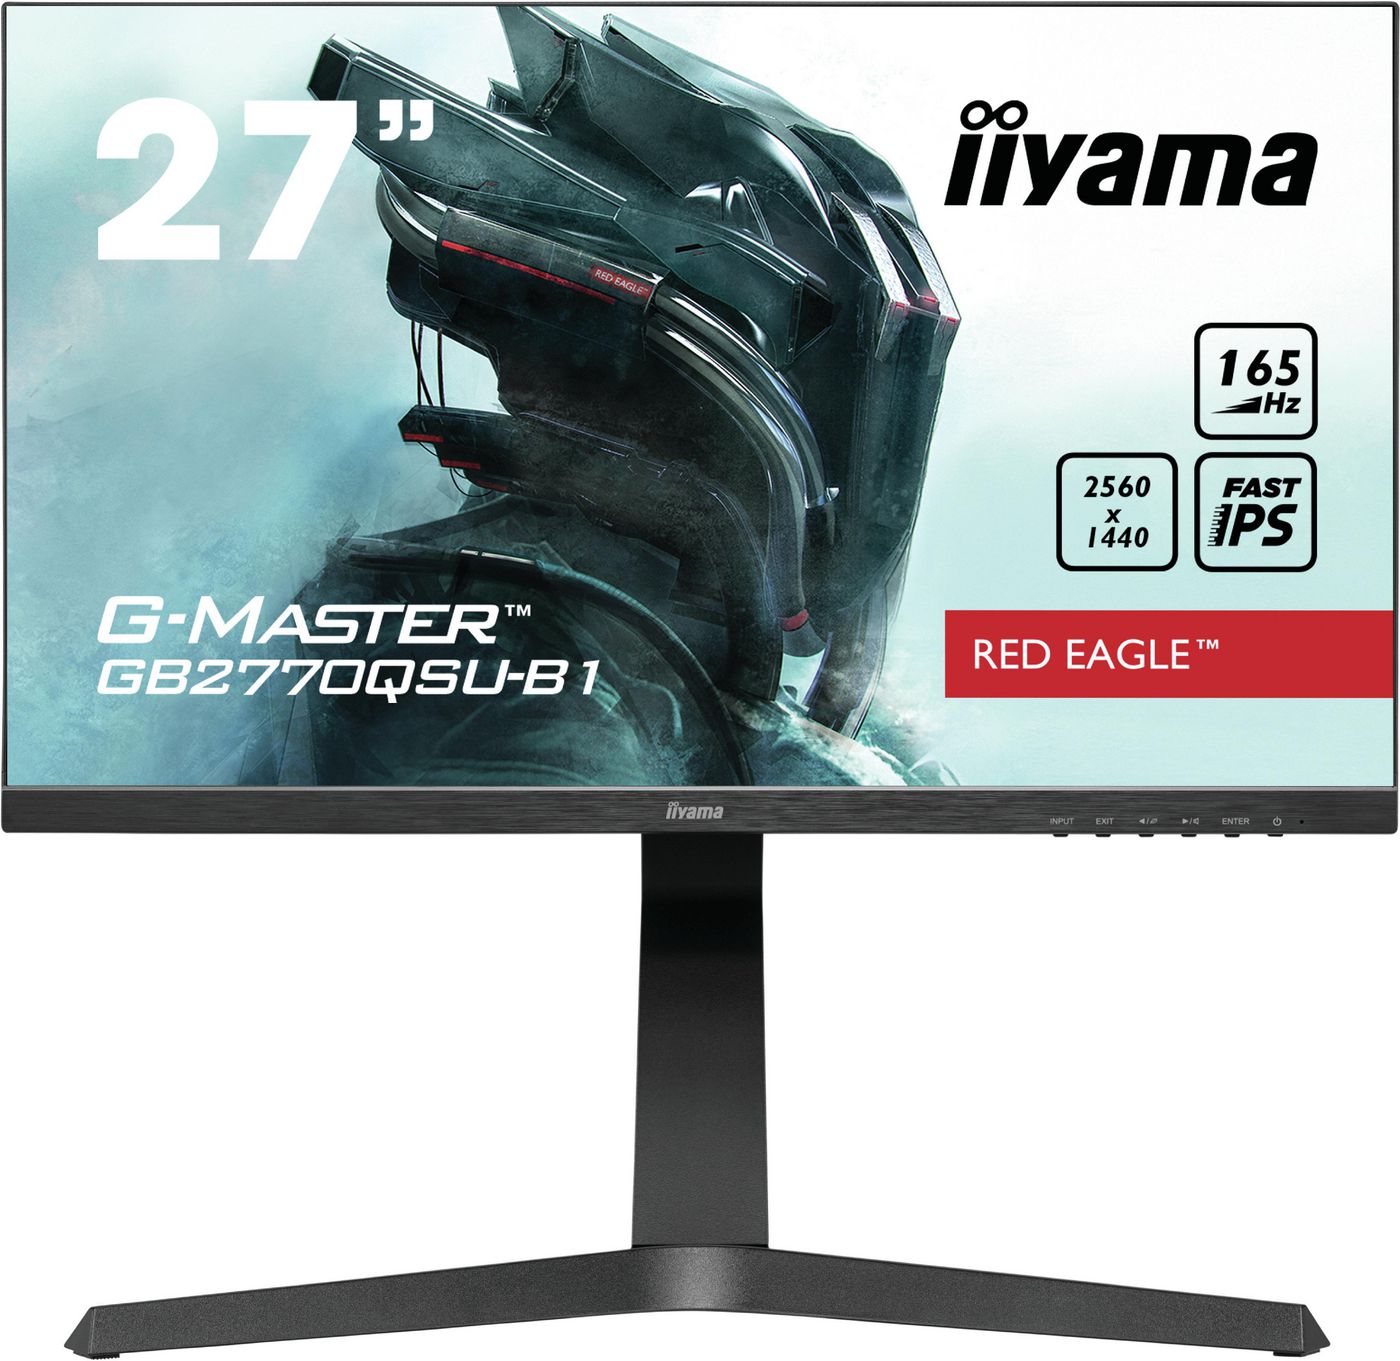 Desktop Monitor - G-MASTER GB2770QSU-B1 - 27in - 2560x1440 (QHD) - Black